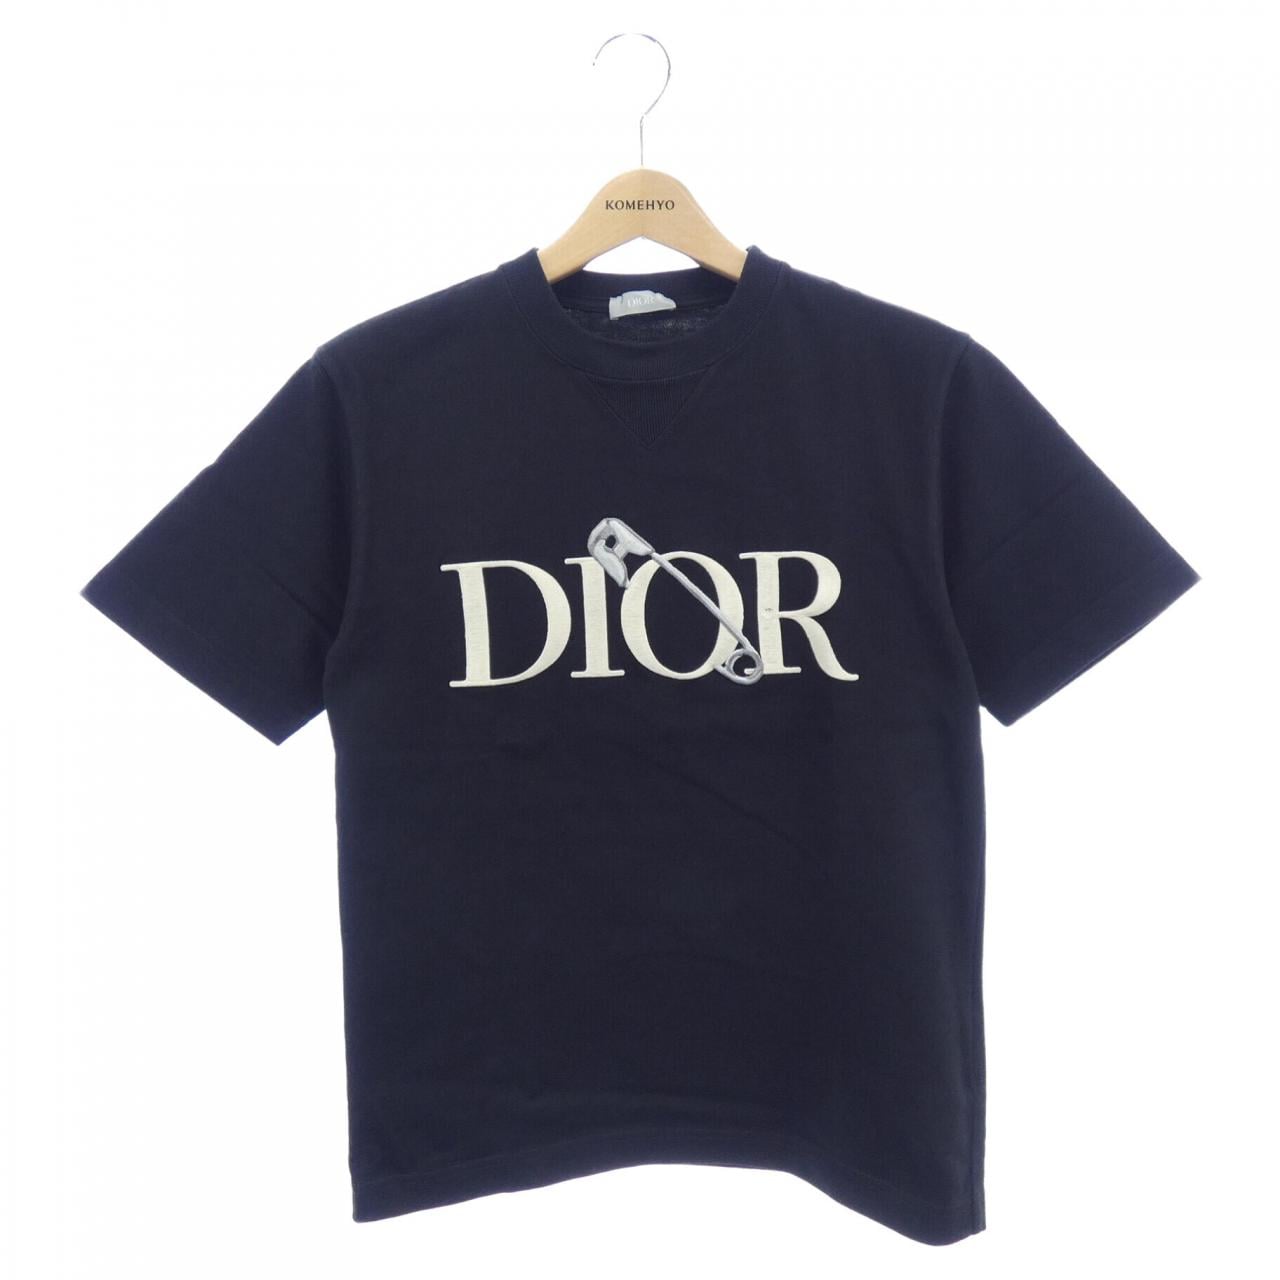 Dior Tシャツchristiandior